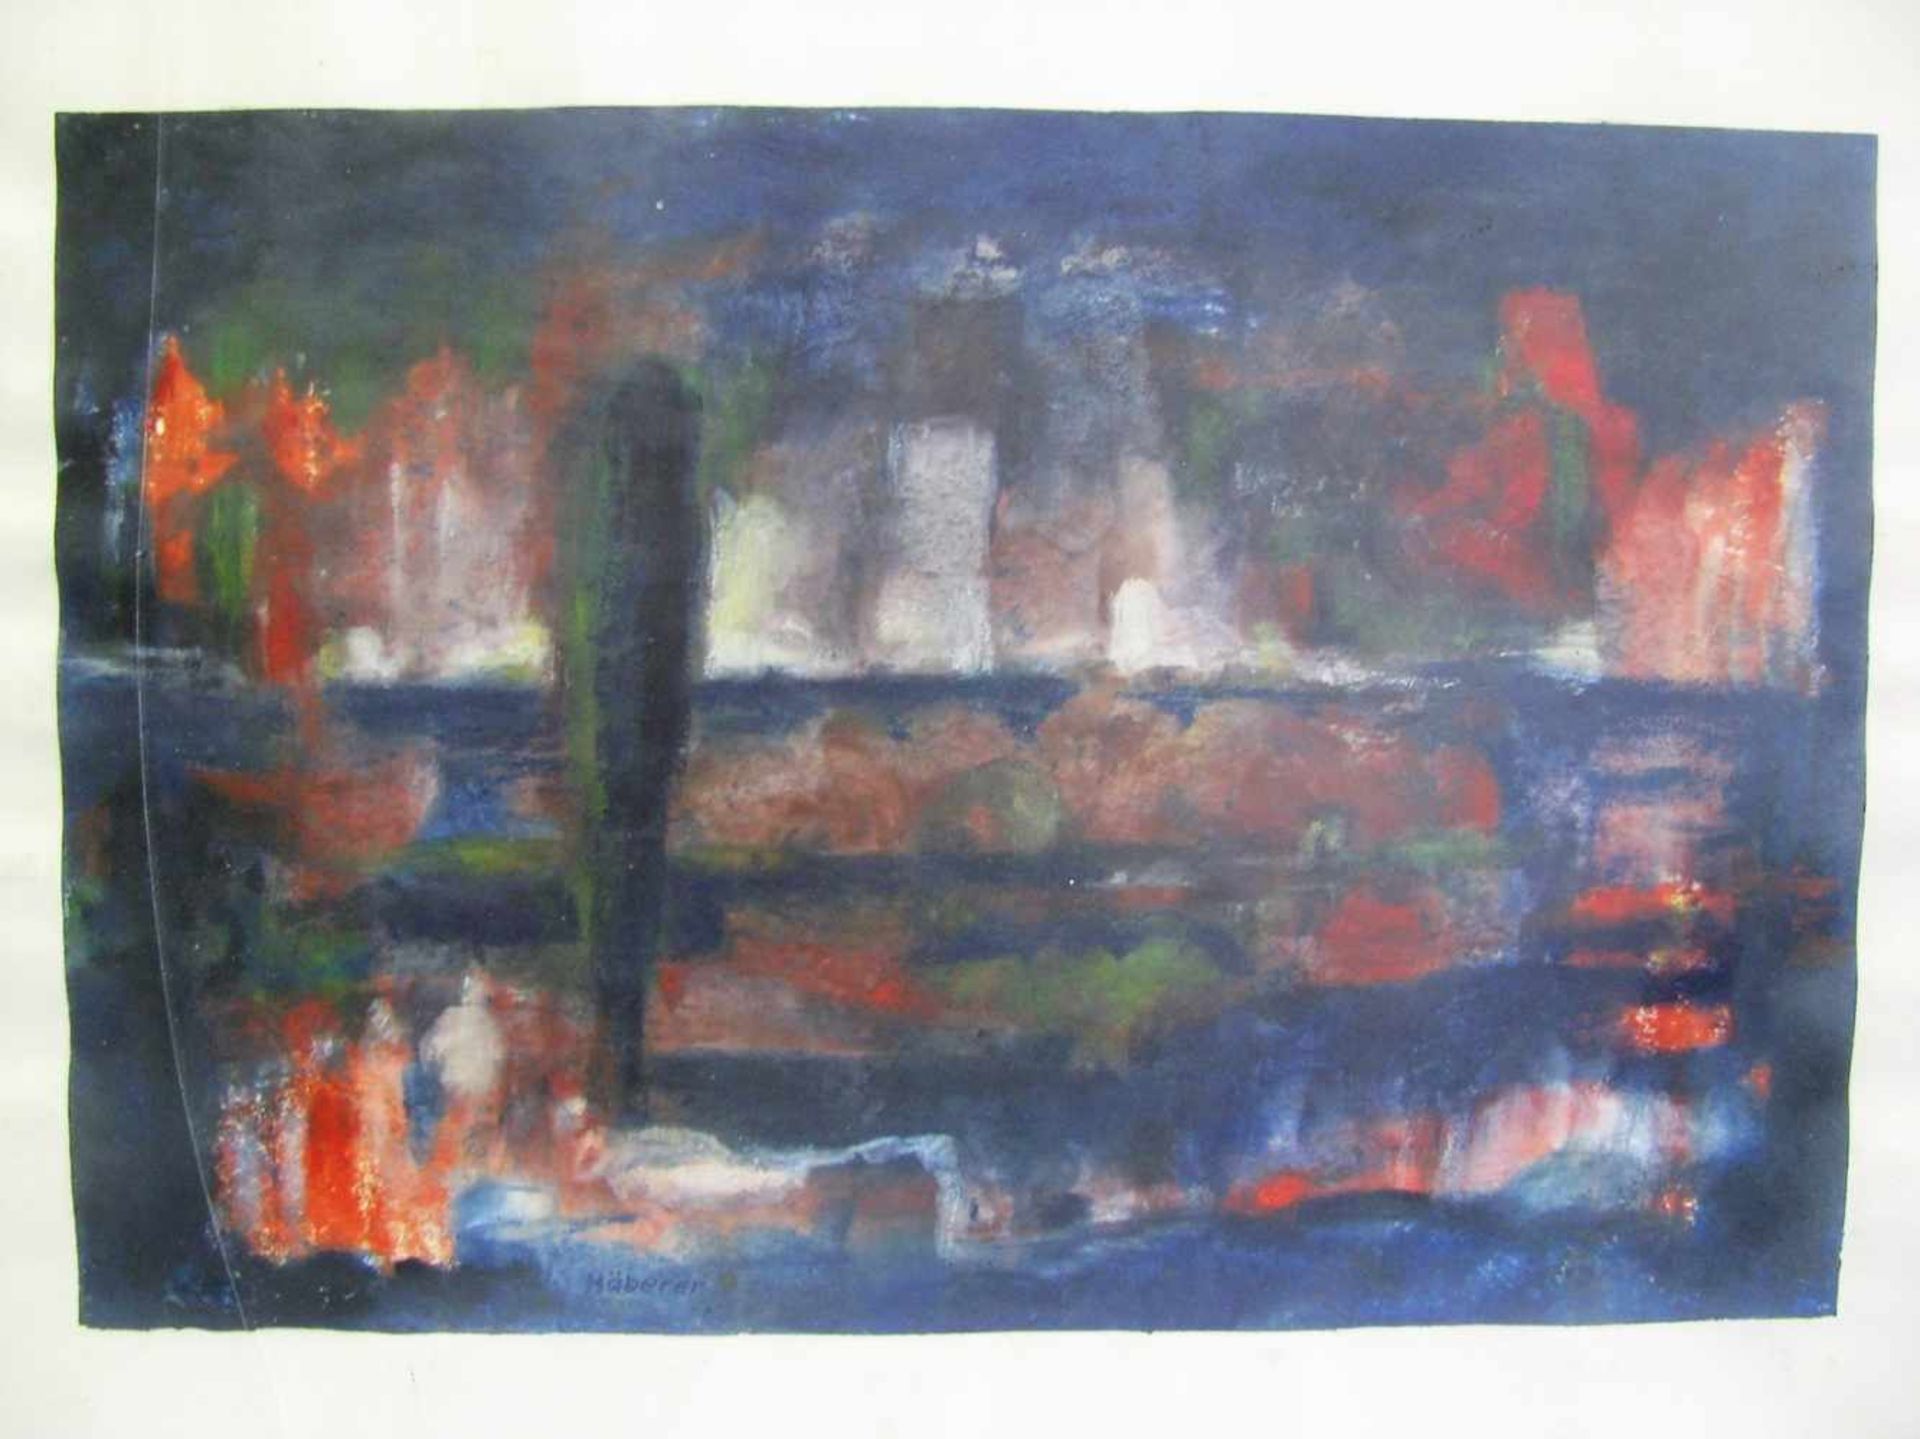 Häberer, Paul, 1902 - 1978, Greiz - Langenenslingen, Schüler von P. Klee und W. Kandinsky,"